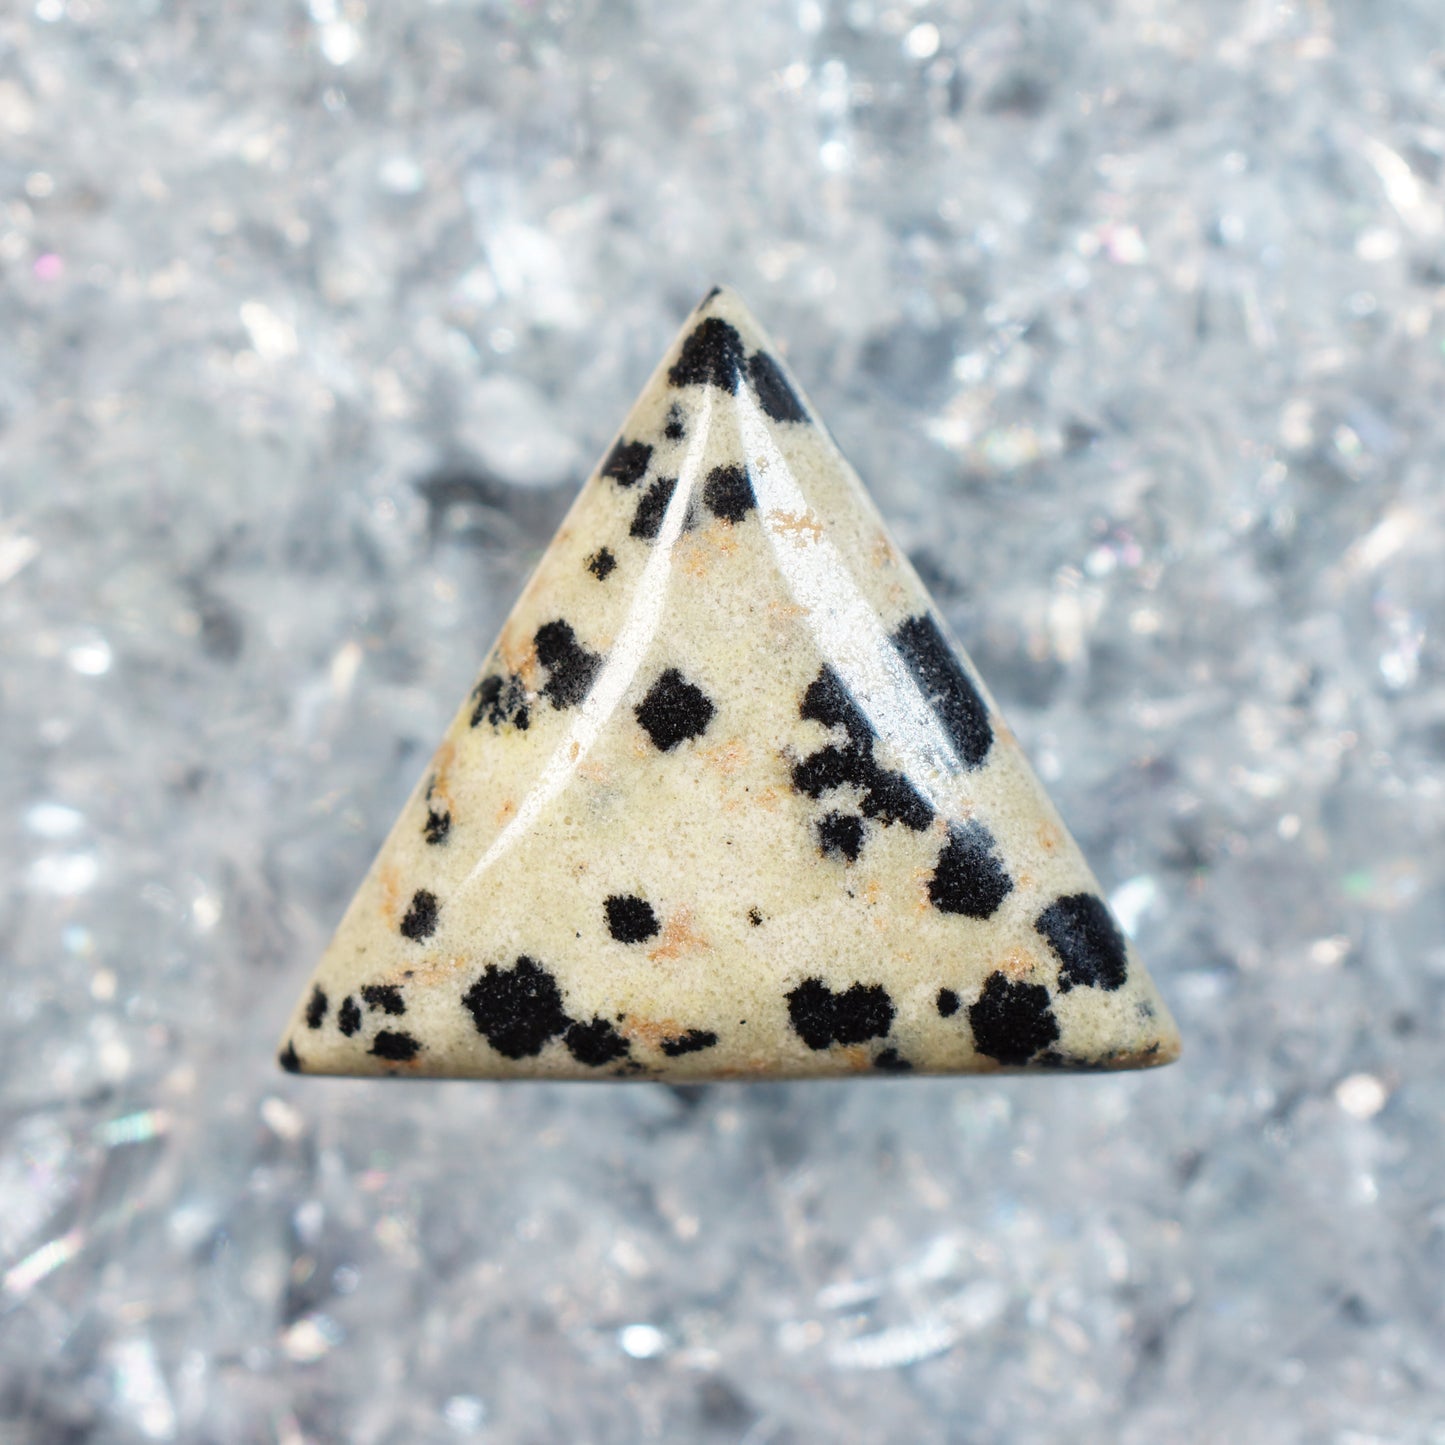 Dalmation Stone - Puffed Triangle